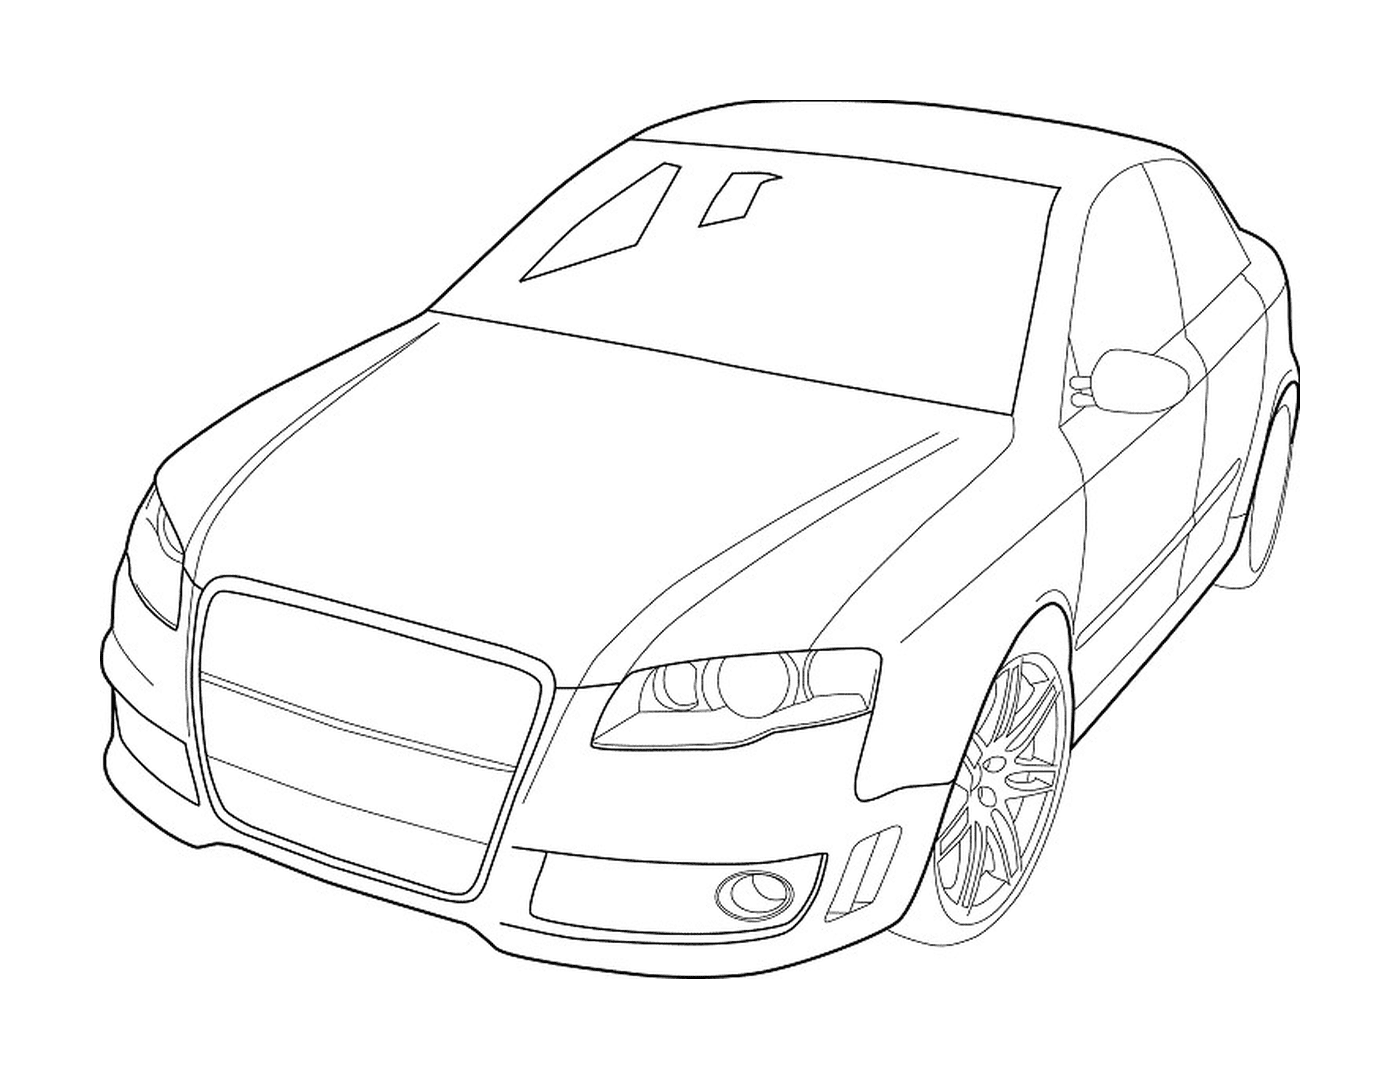  Audi carro projetado 